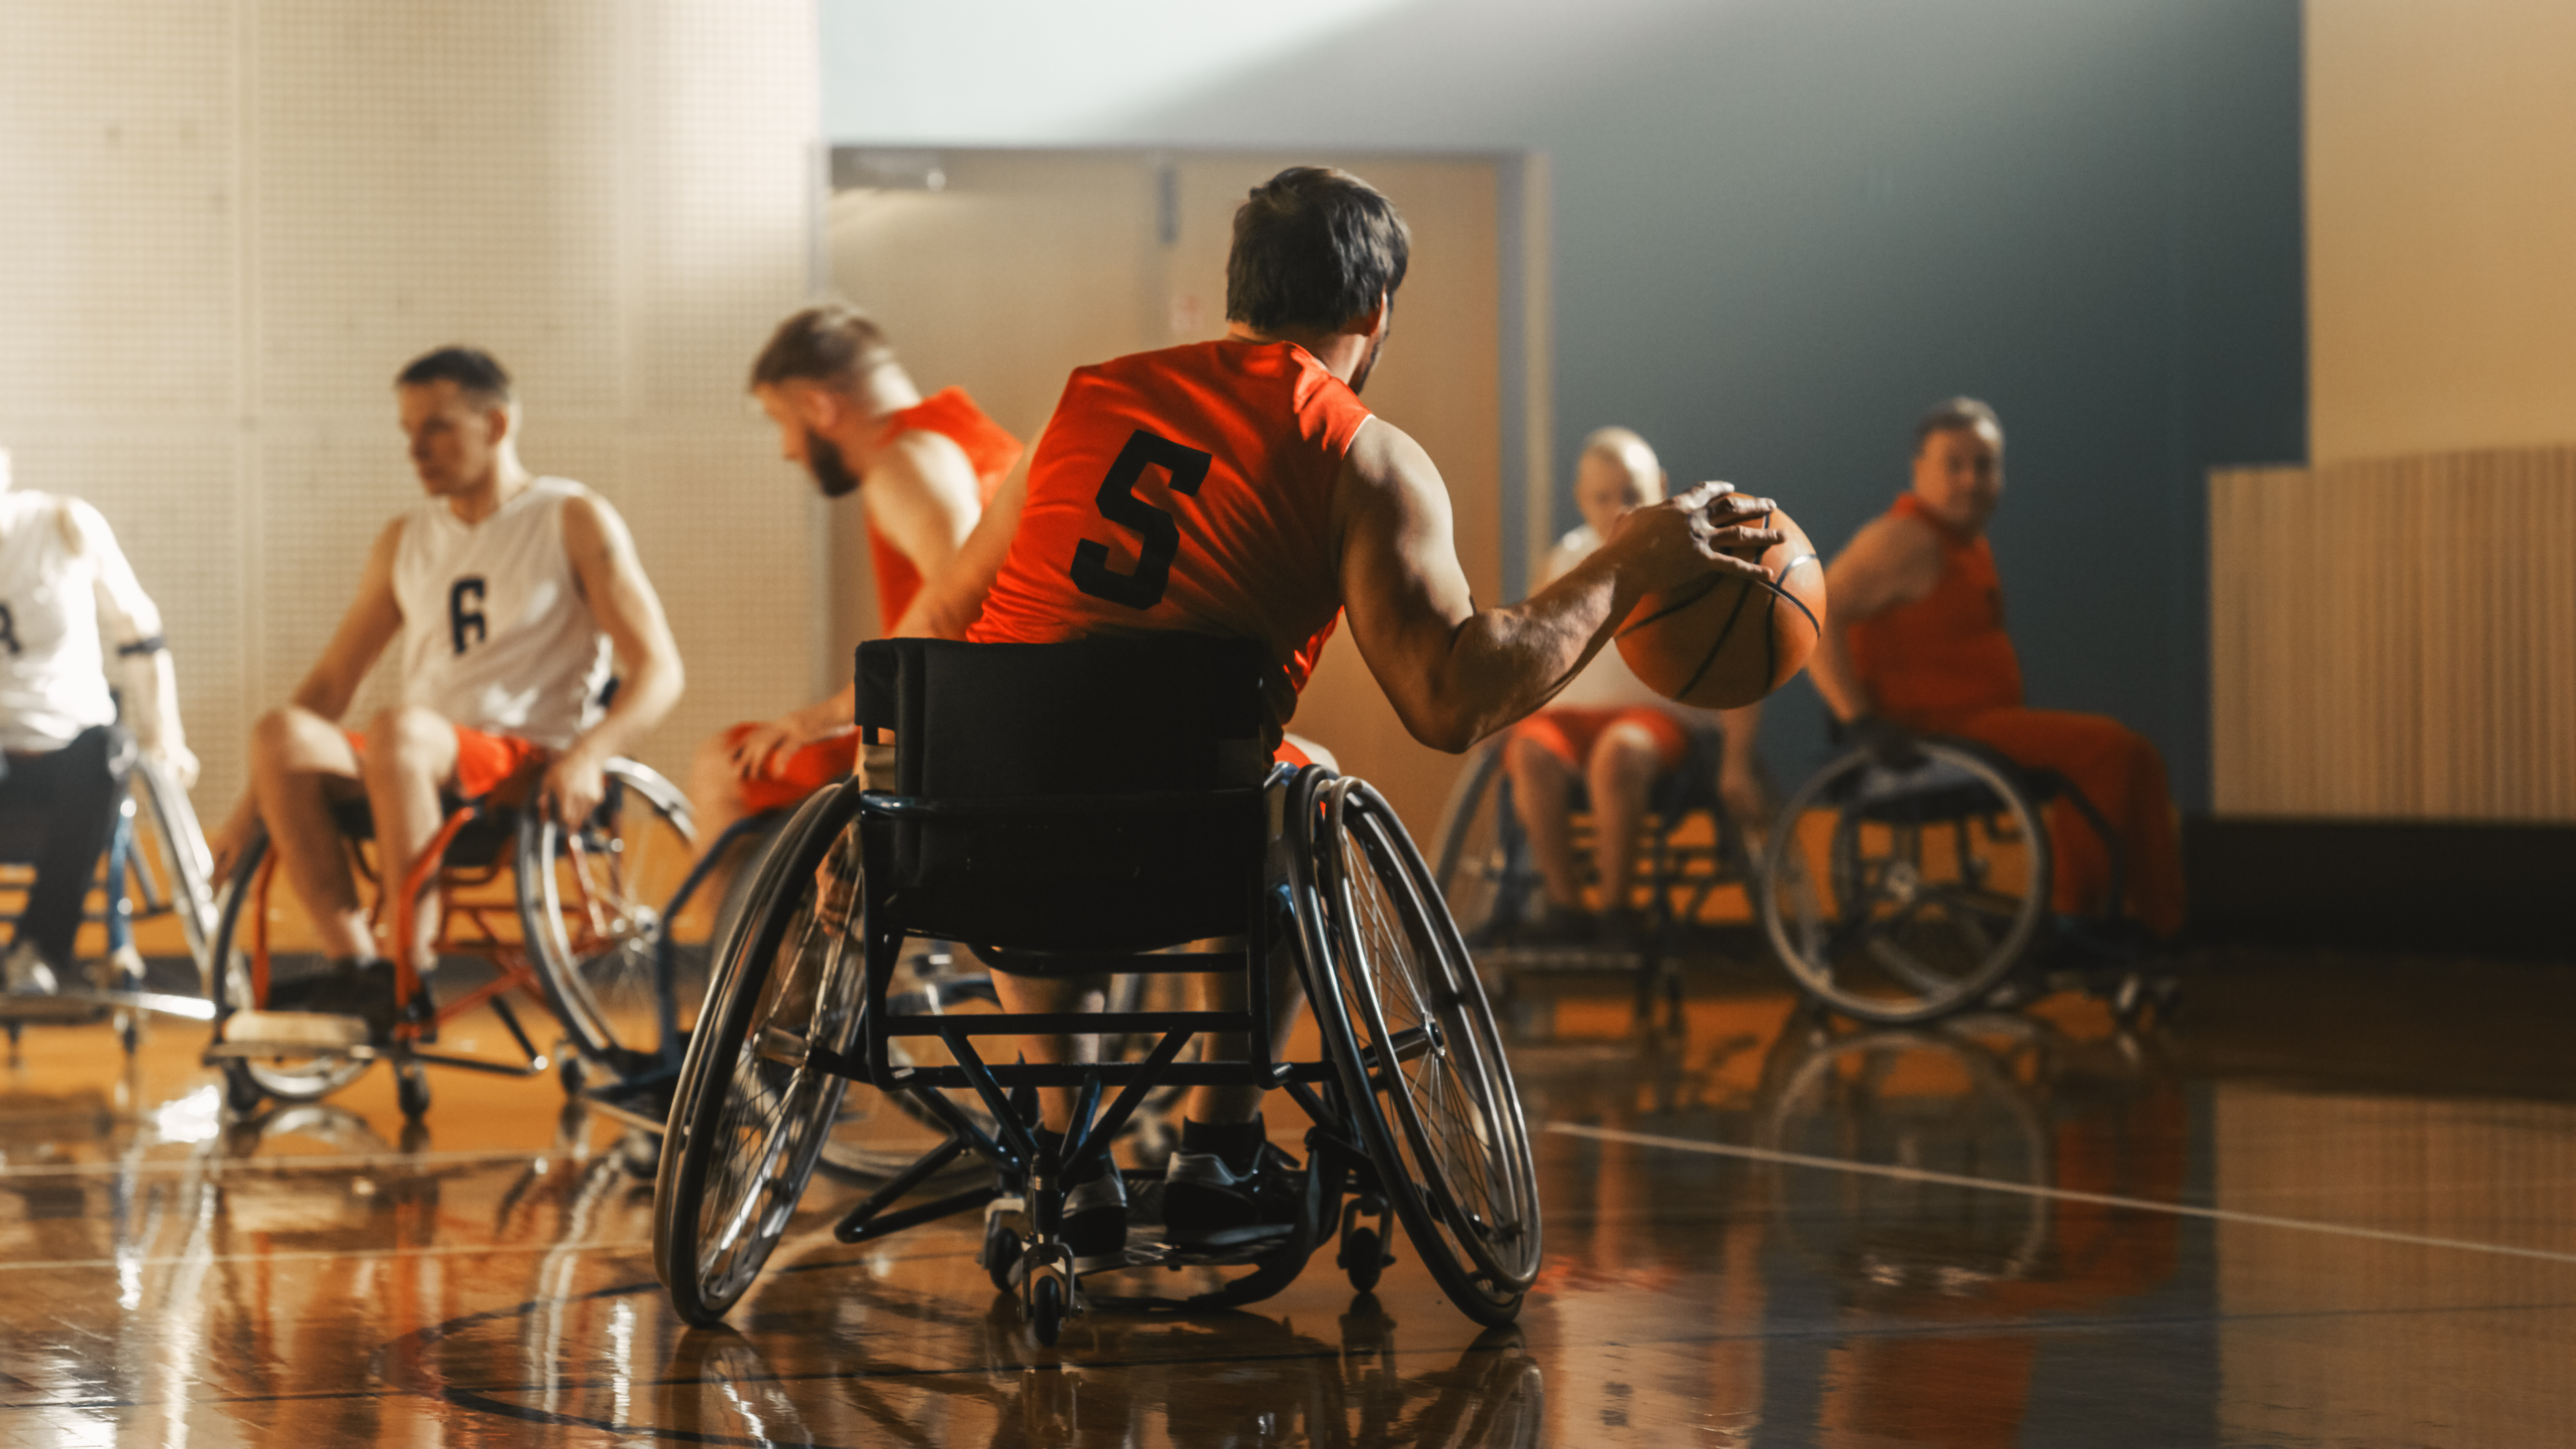 Mehrere Personen im Rollstuhl spielen Rollstuhlbasketball in einer Sporthalle.